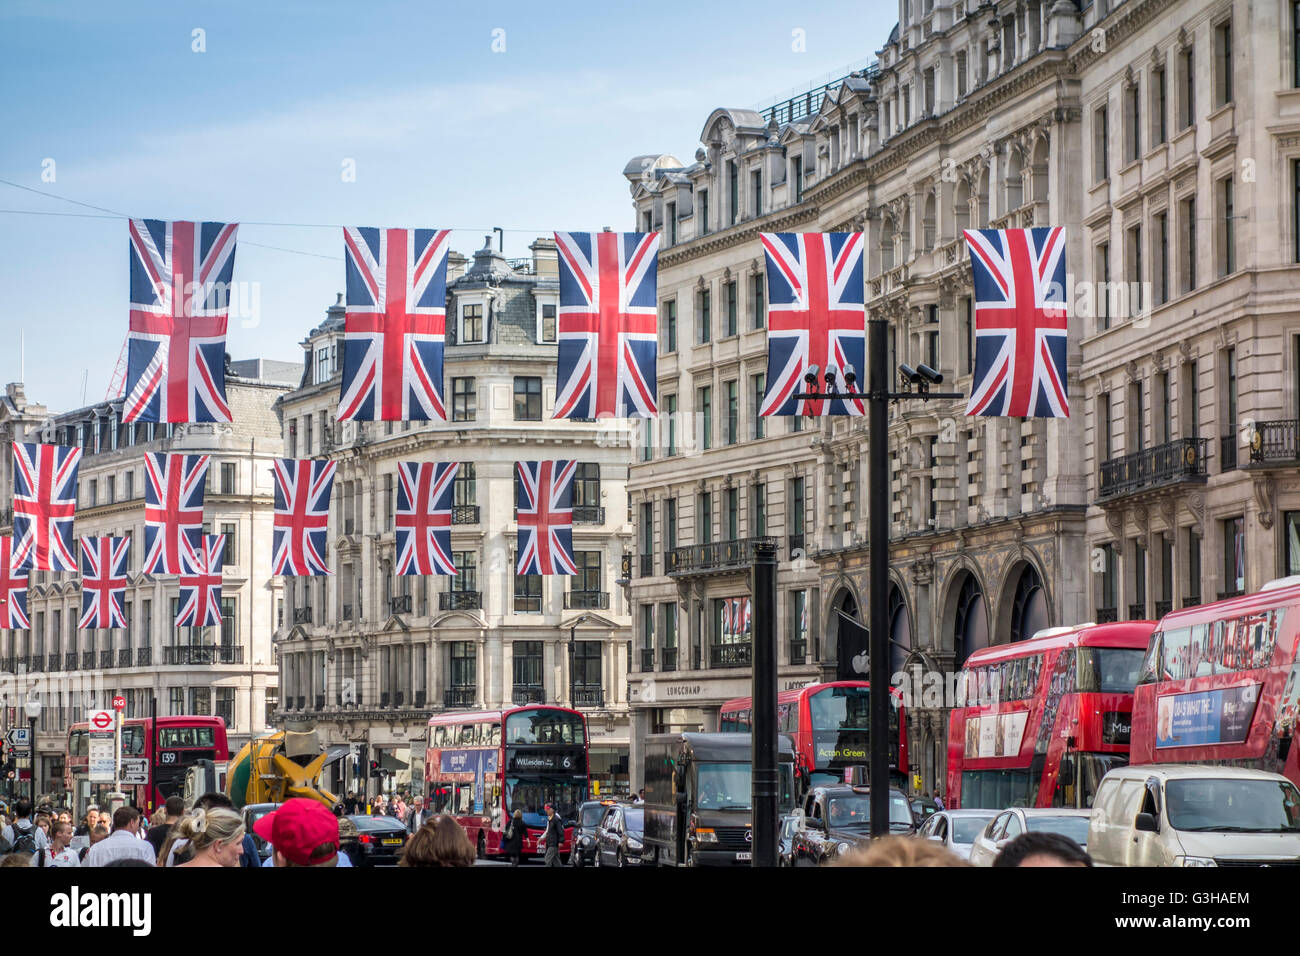 Union européenne drapeaux / drapeaux Union Jack qui pèsent sur Regent Street, Londres pour l'anniversaire de la Reine Banque D'Images